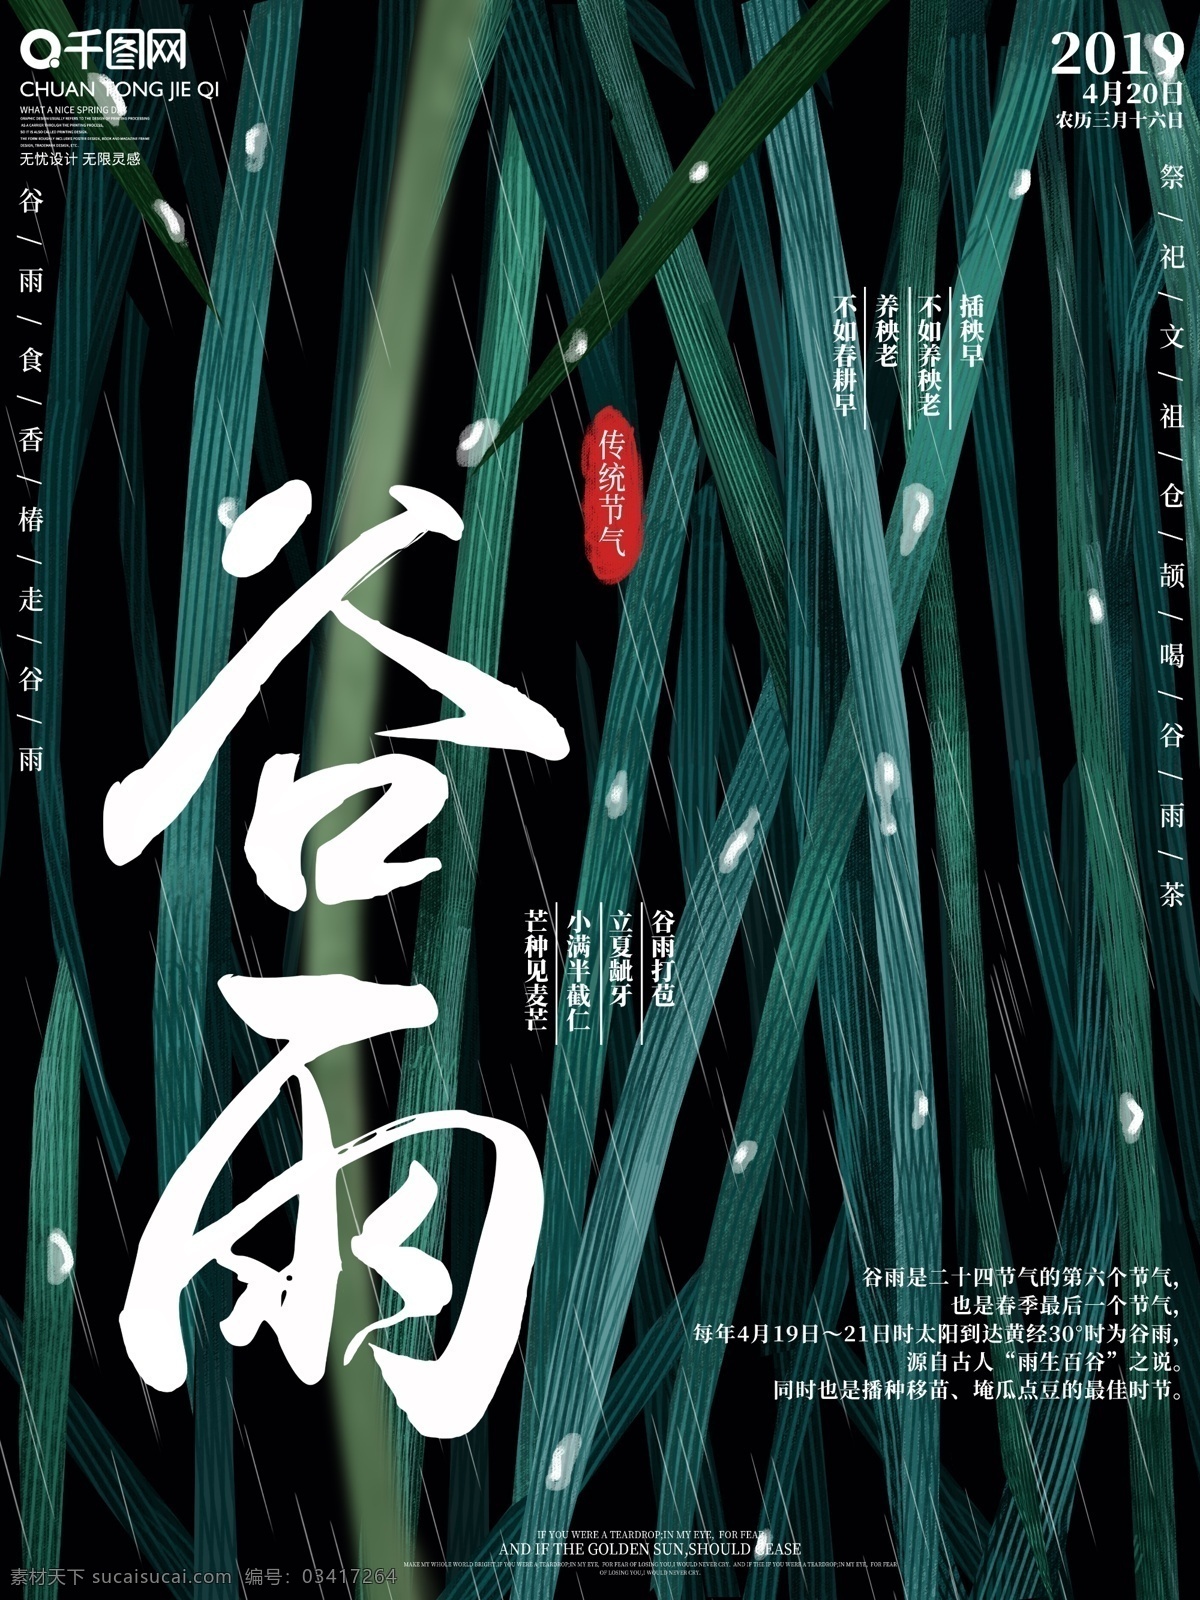 原创 手绘 二十四节气 谷雨 海报 中国传统 节日 池塘落叶 雨露 水珠 下雨 插画 宣传